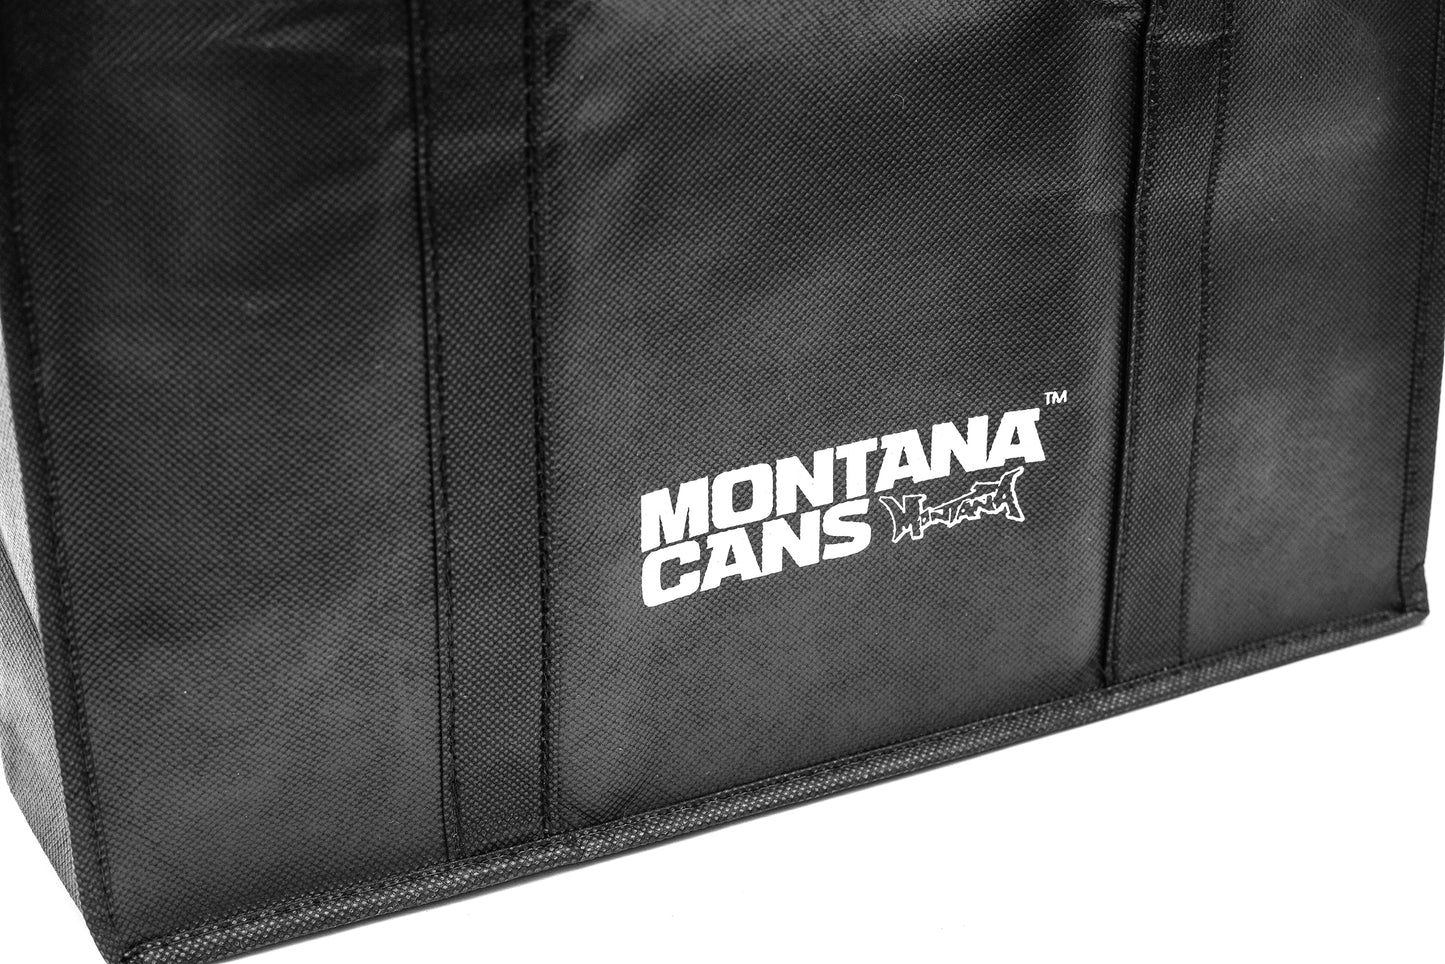 Montana Bag Panel Black